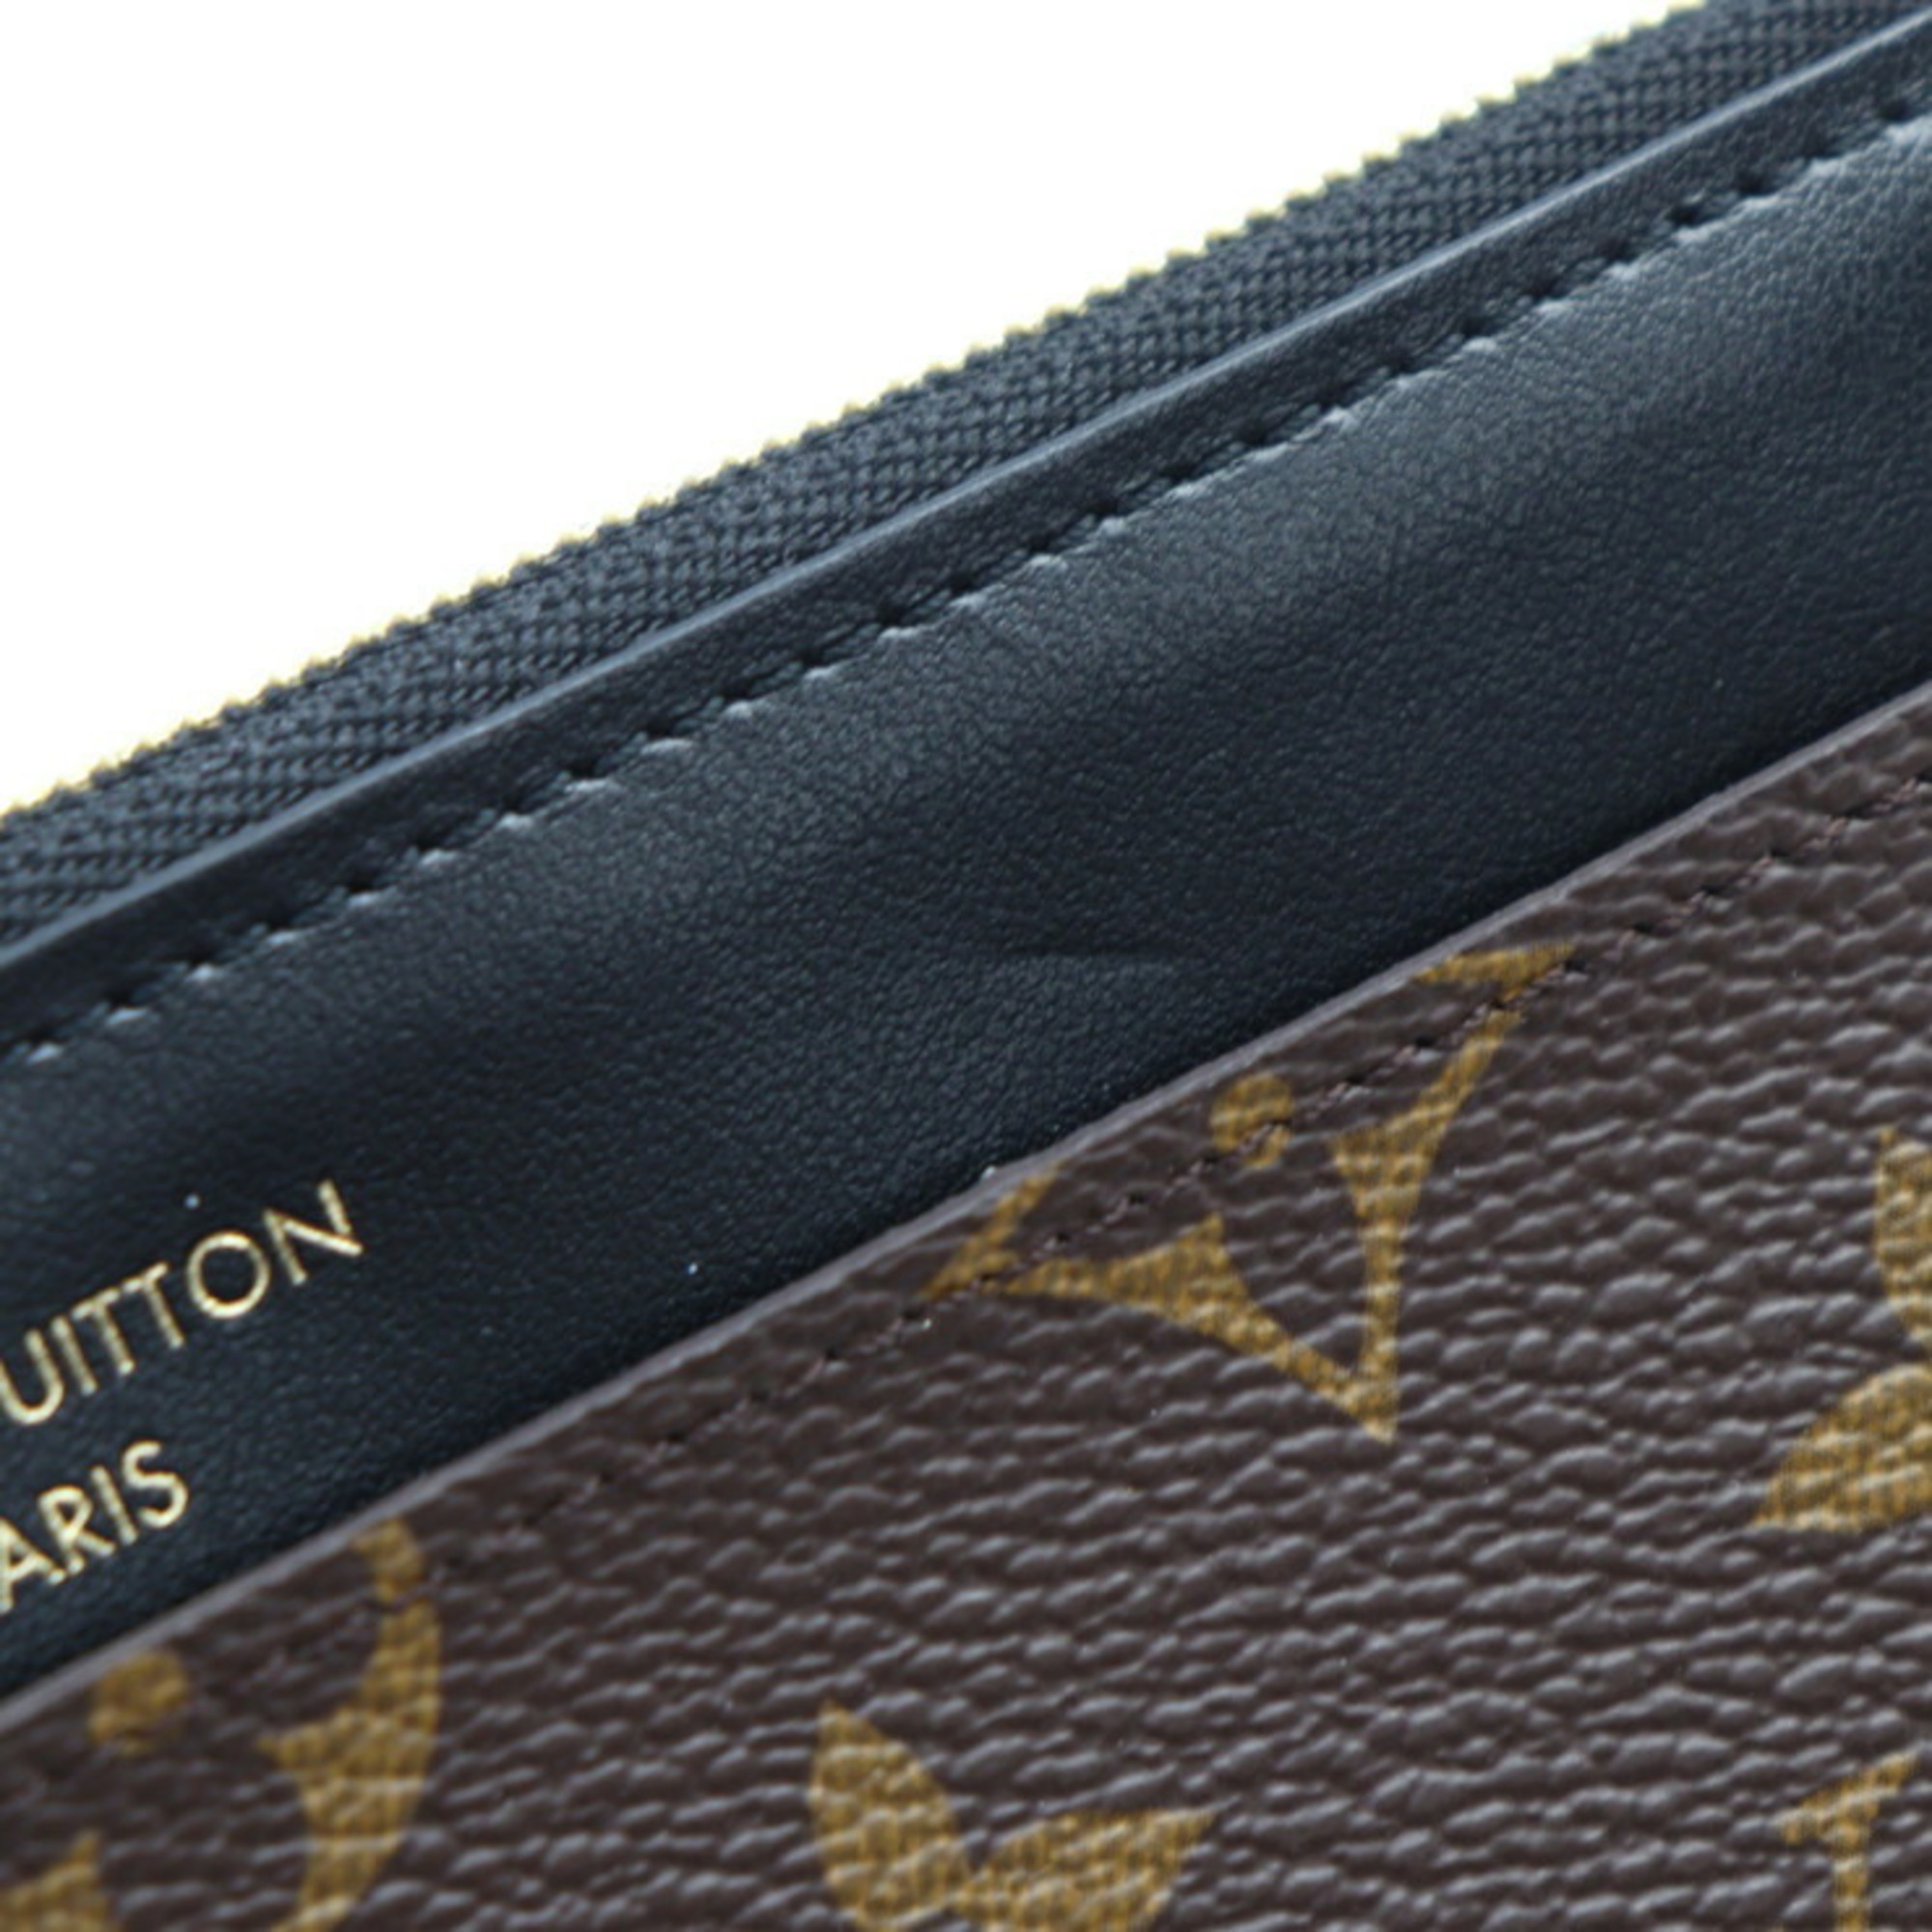 LOUIS VUITTON Louis Vuitton Purse Long Wallet M80348 Monogram Canvas Leather Brown Black Card Case Coin Fragment